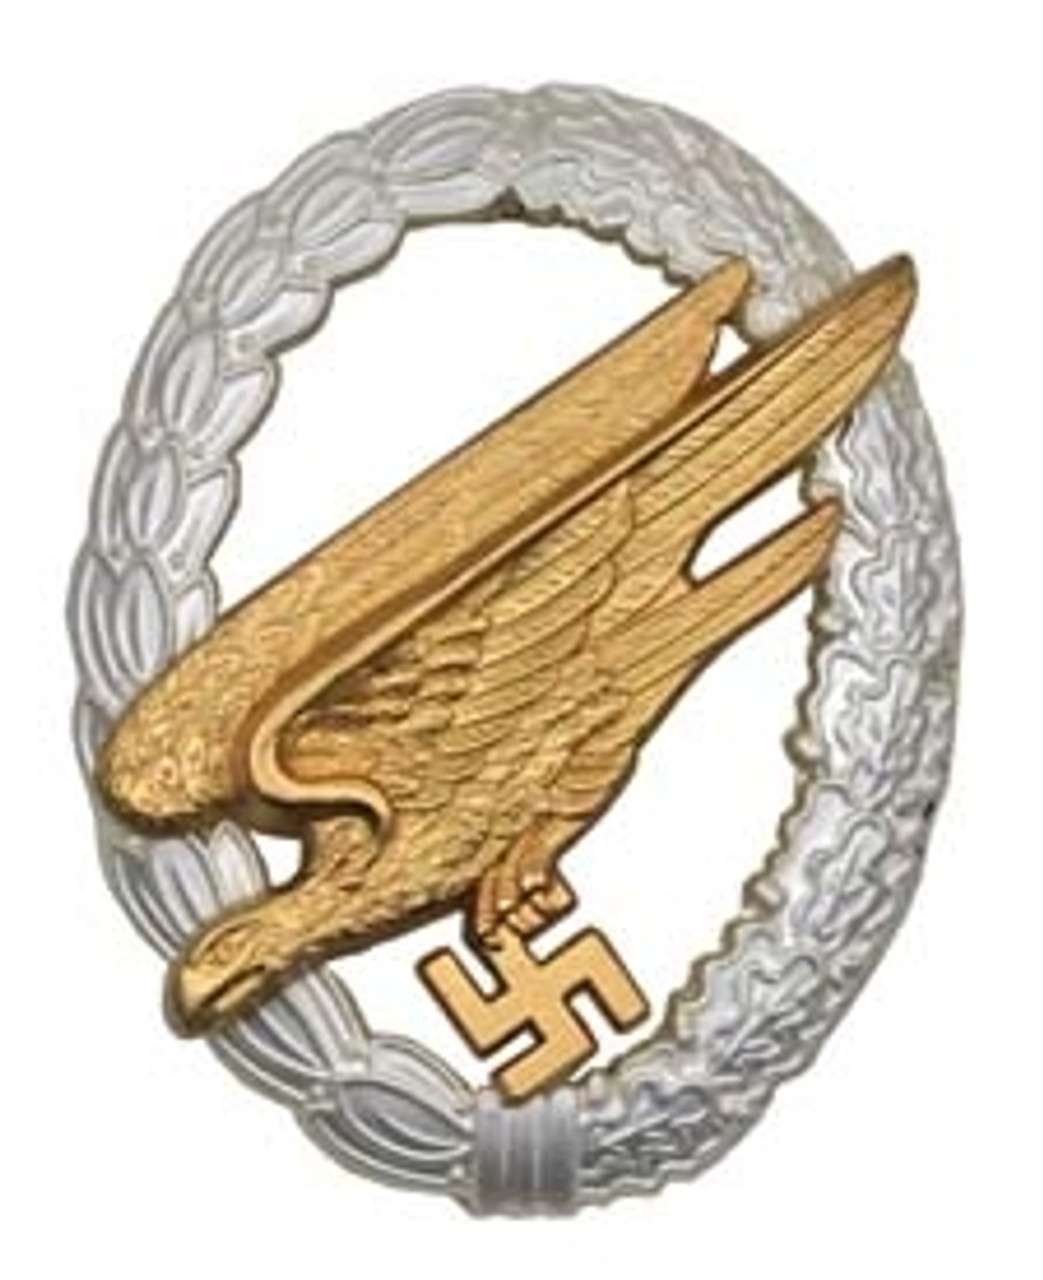 Fallschirmjäger Badge (Fallschirmjägerabzeichen) from Hessen Antique